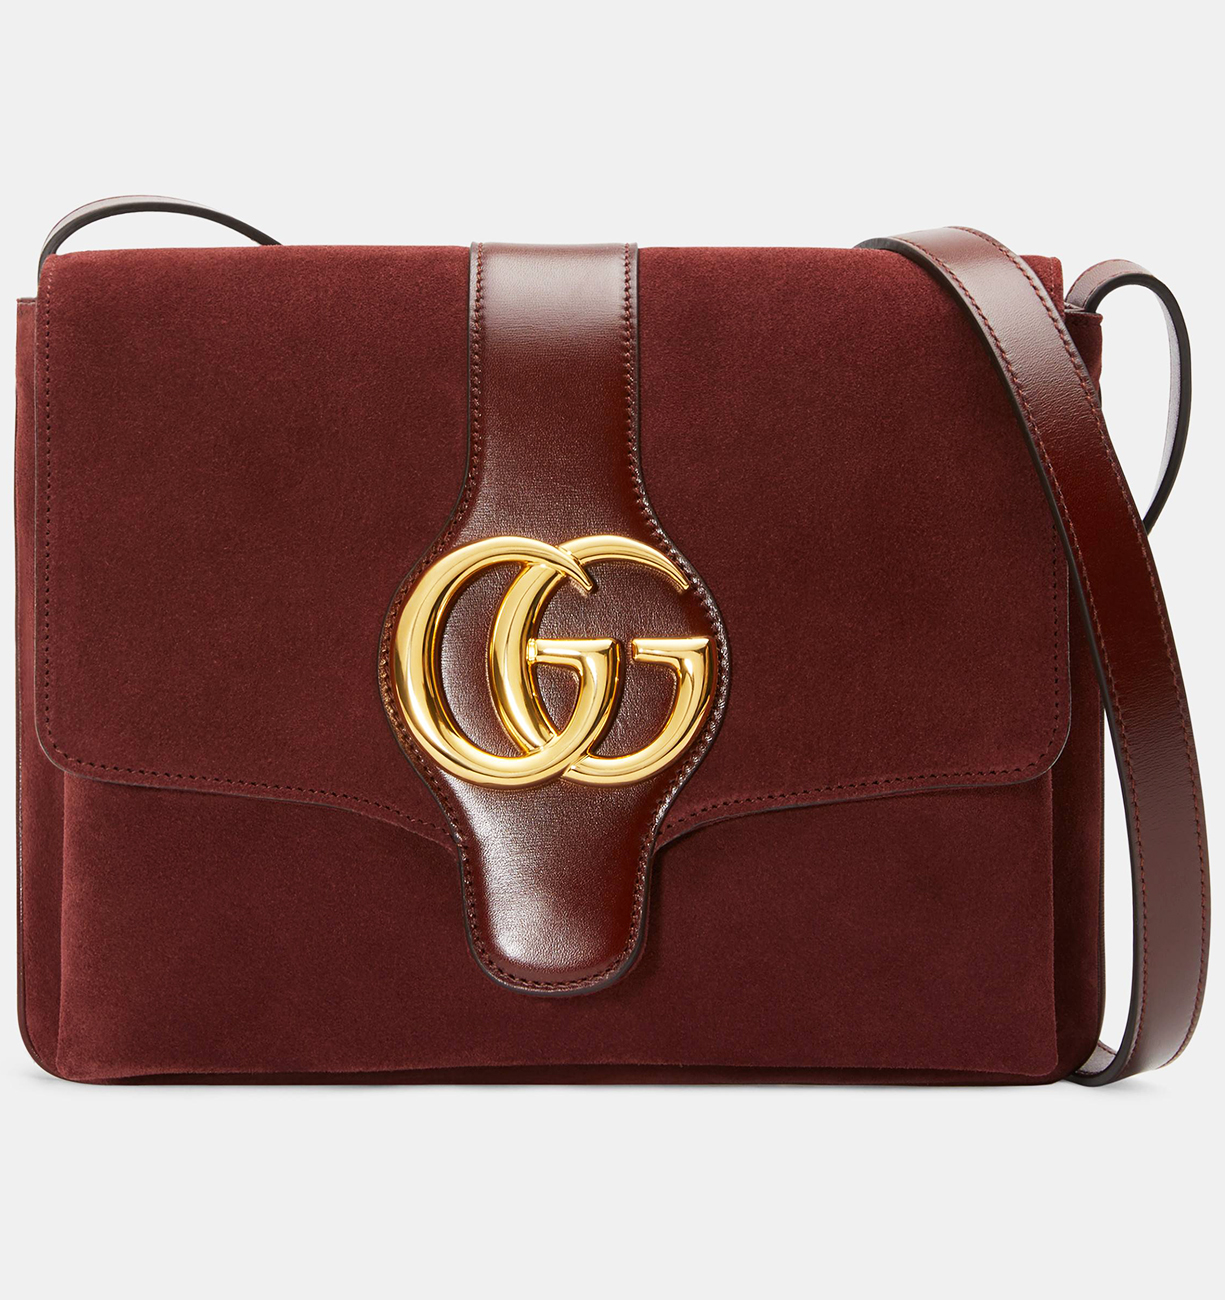 handbag gucci 2019